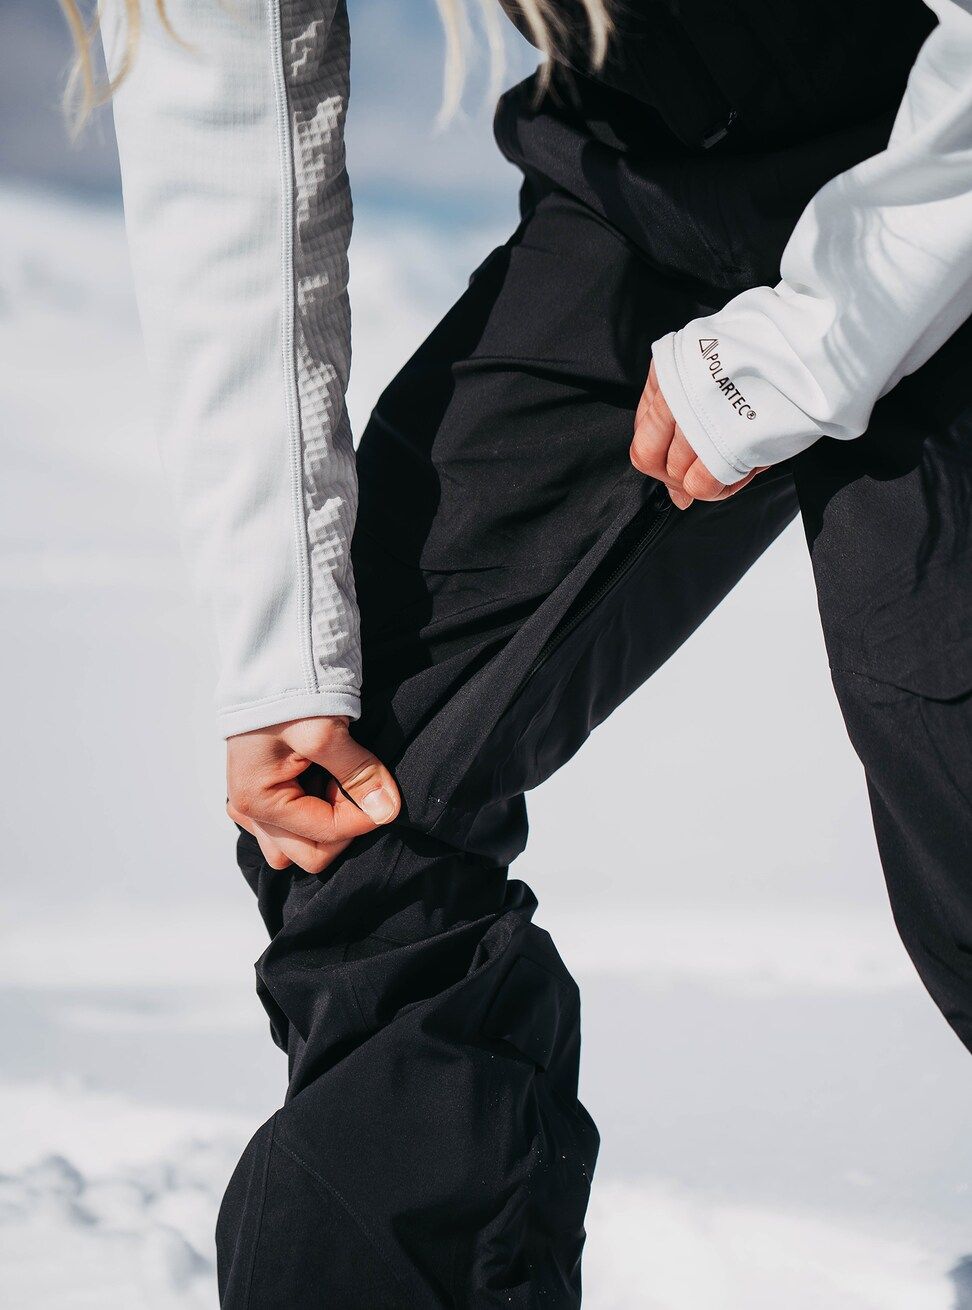 Women's Burton [ak] Kimmy GORE-TEX 3L Stretch Bib Pants True Black Snow Pants